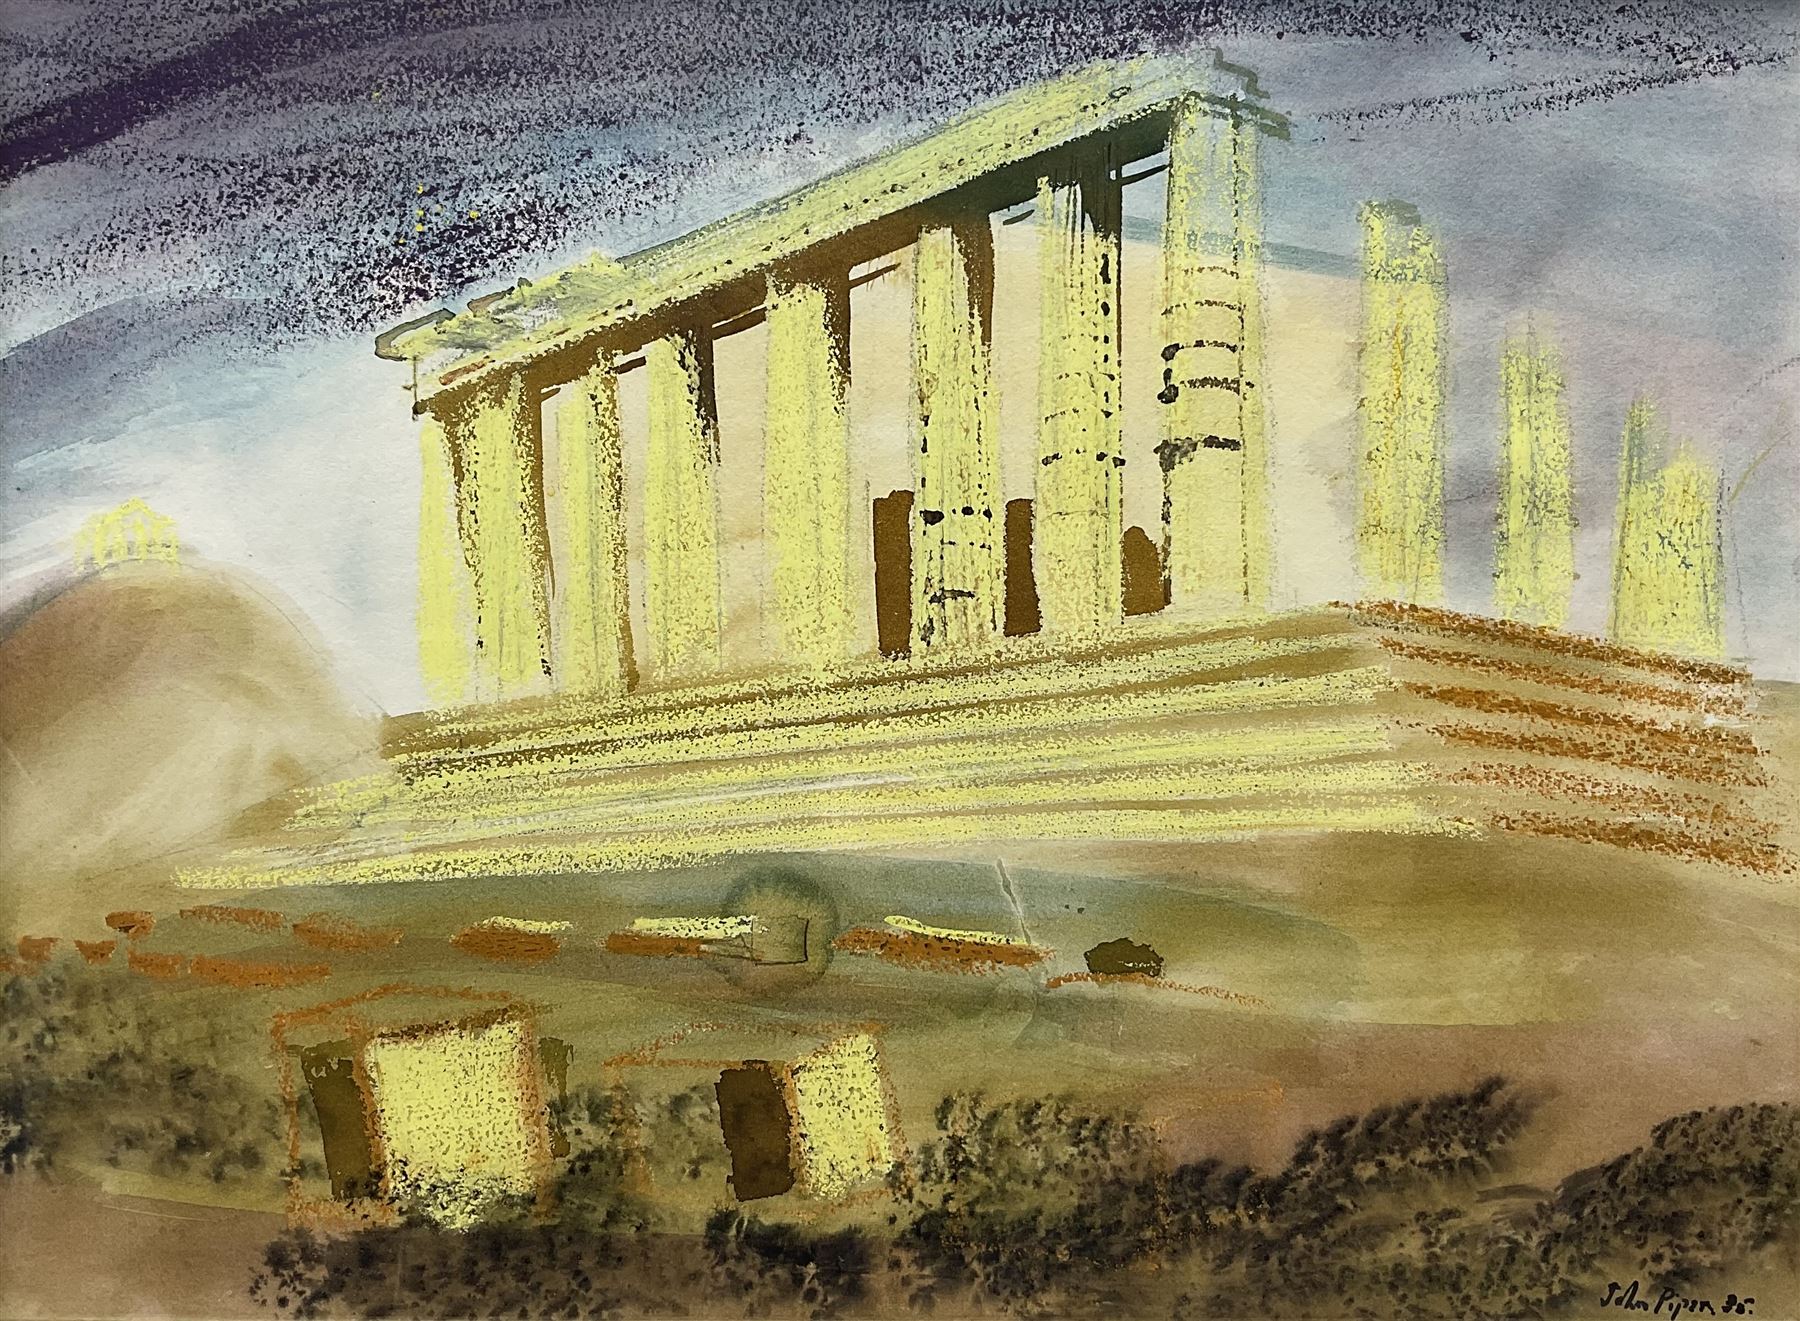 Circle of John Piper (British 1903-1992): The Parthenon - Athens Acropolis